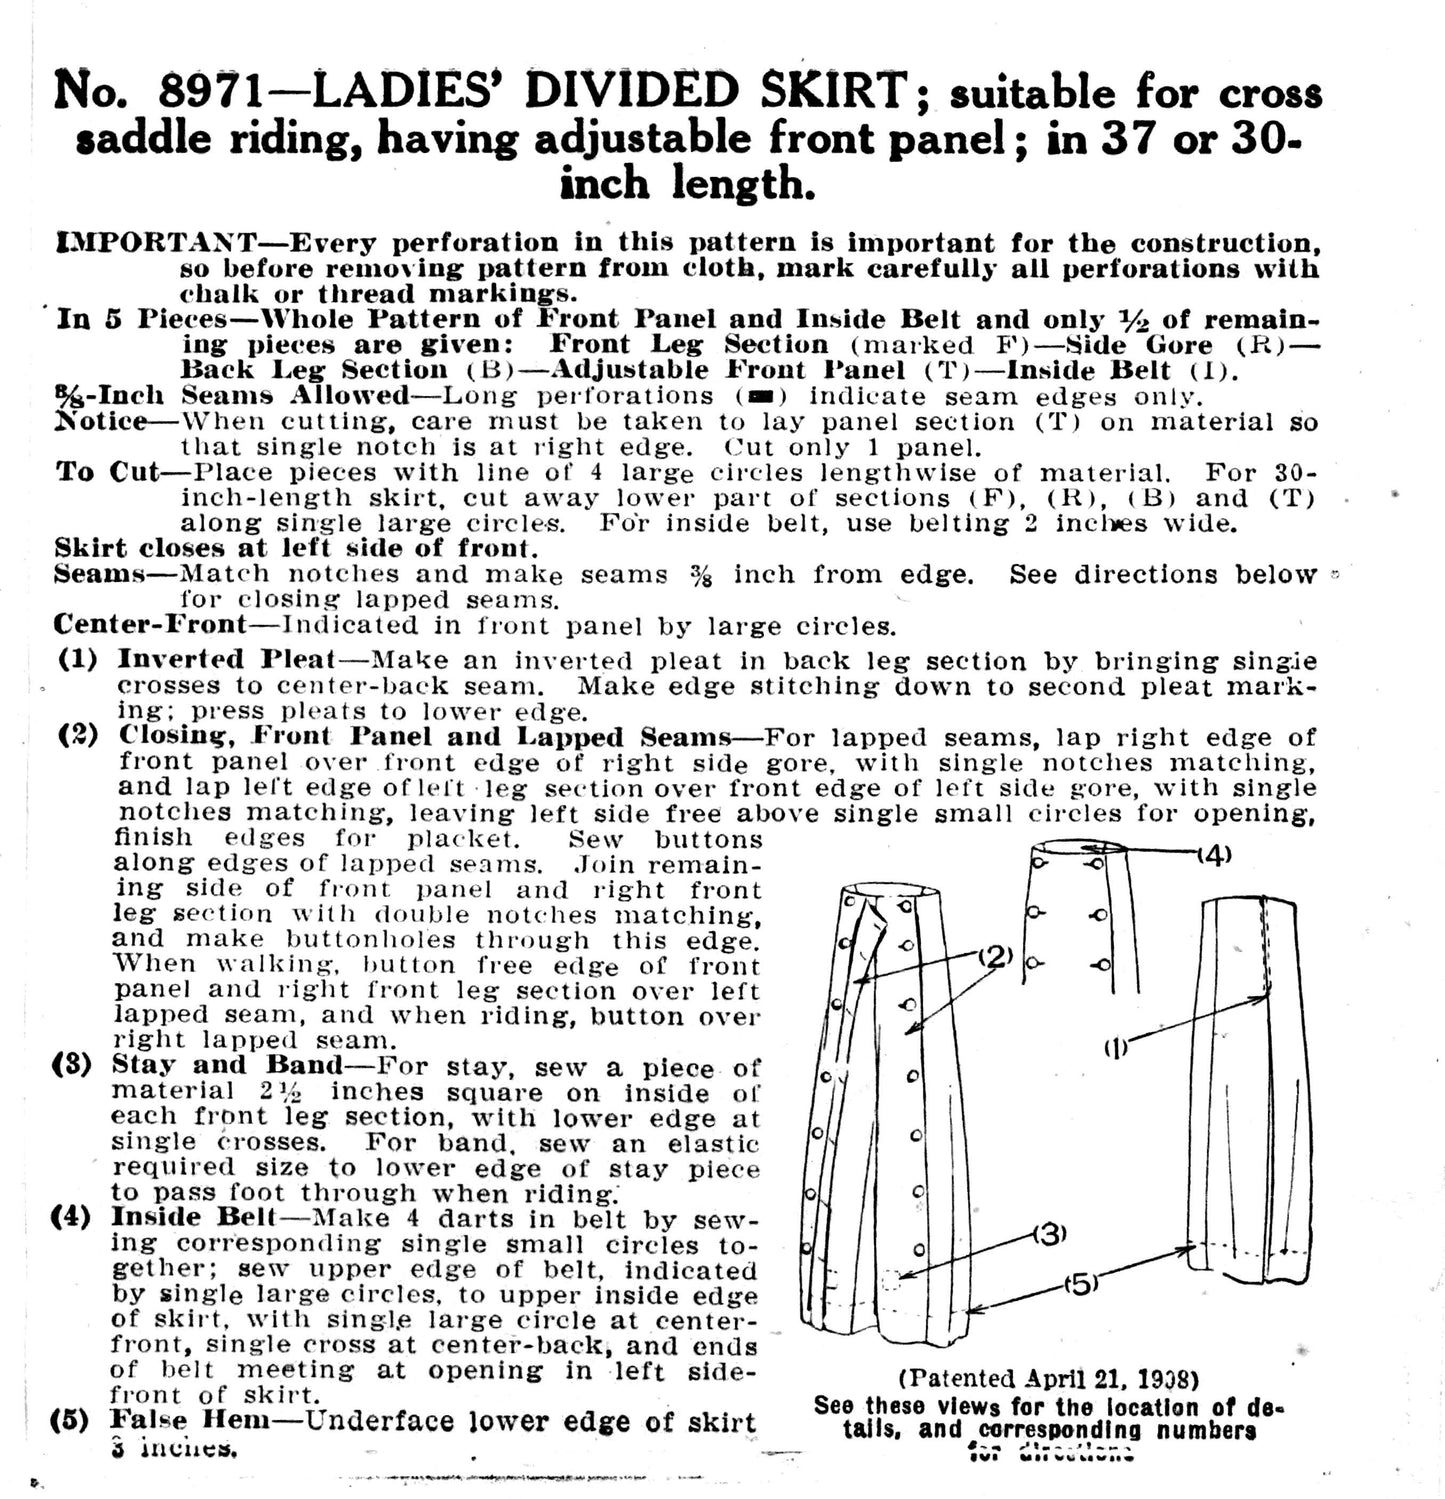 E-Pattern-  1910s 1920s Riding Pants or Split Skirt- 22"-42" Waist